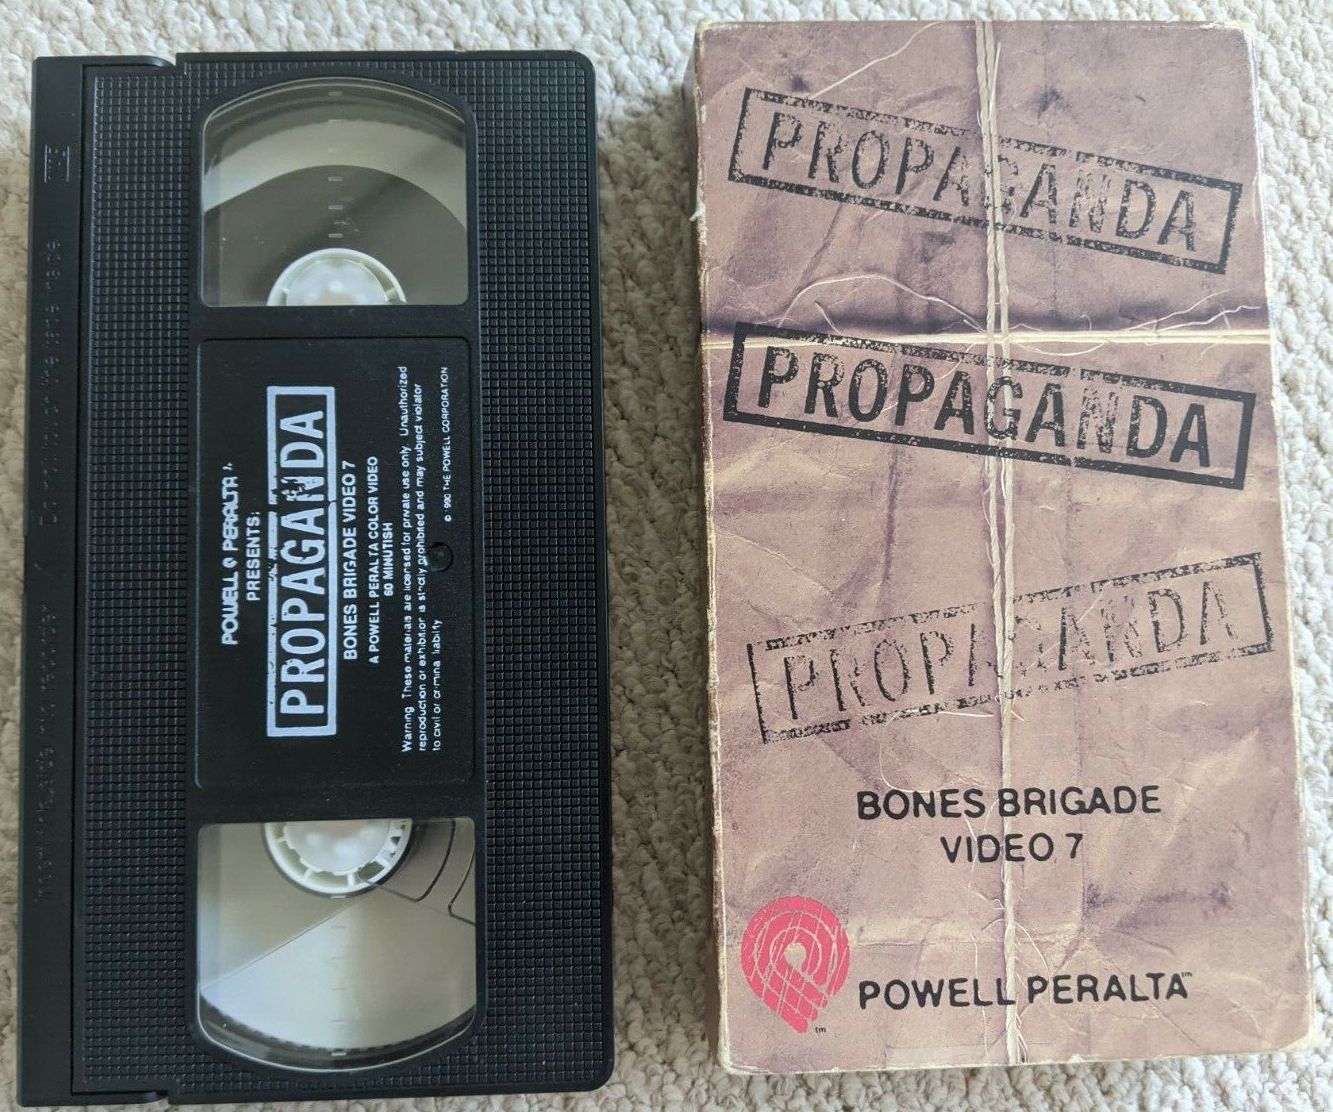 Powell Peralta - Propaganda cover